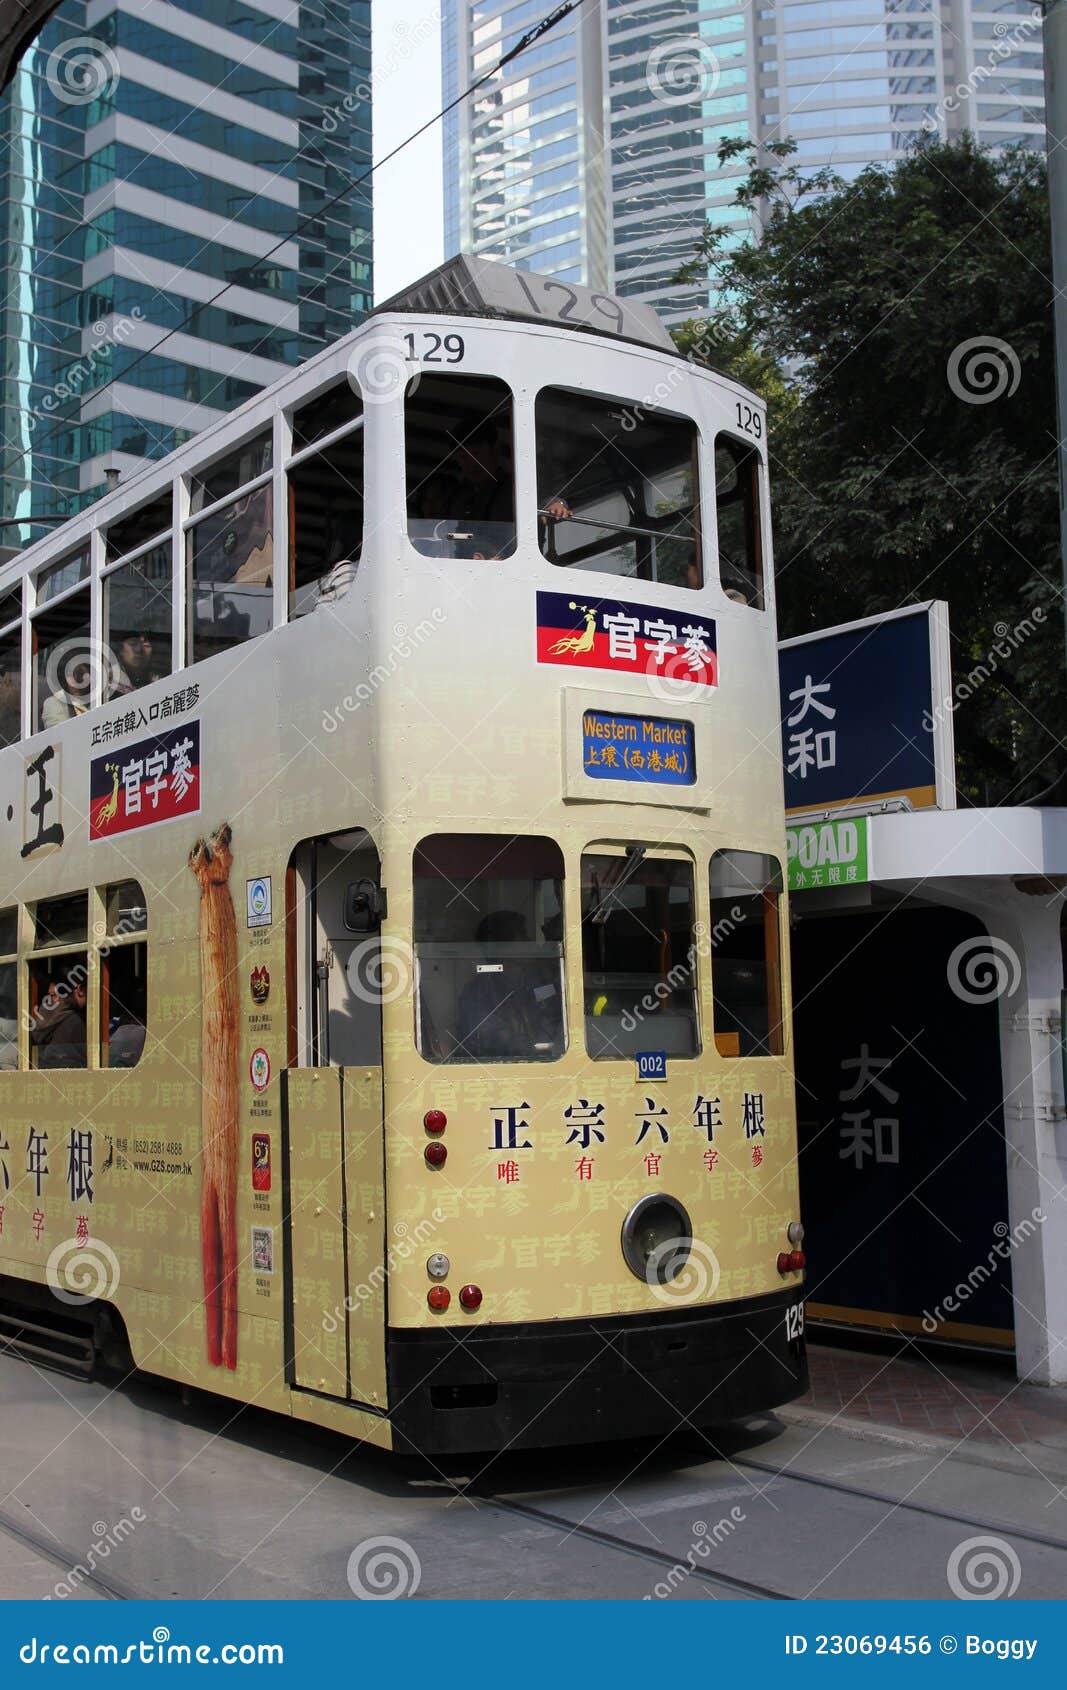 τραμ του Χογκ Κογκ. 30 το 1904 έχουν της Hong χλμ kong ανοιγμένο το μήκος παραδοσιακό τραμ διαδρομής συστημάτων συνολικό